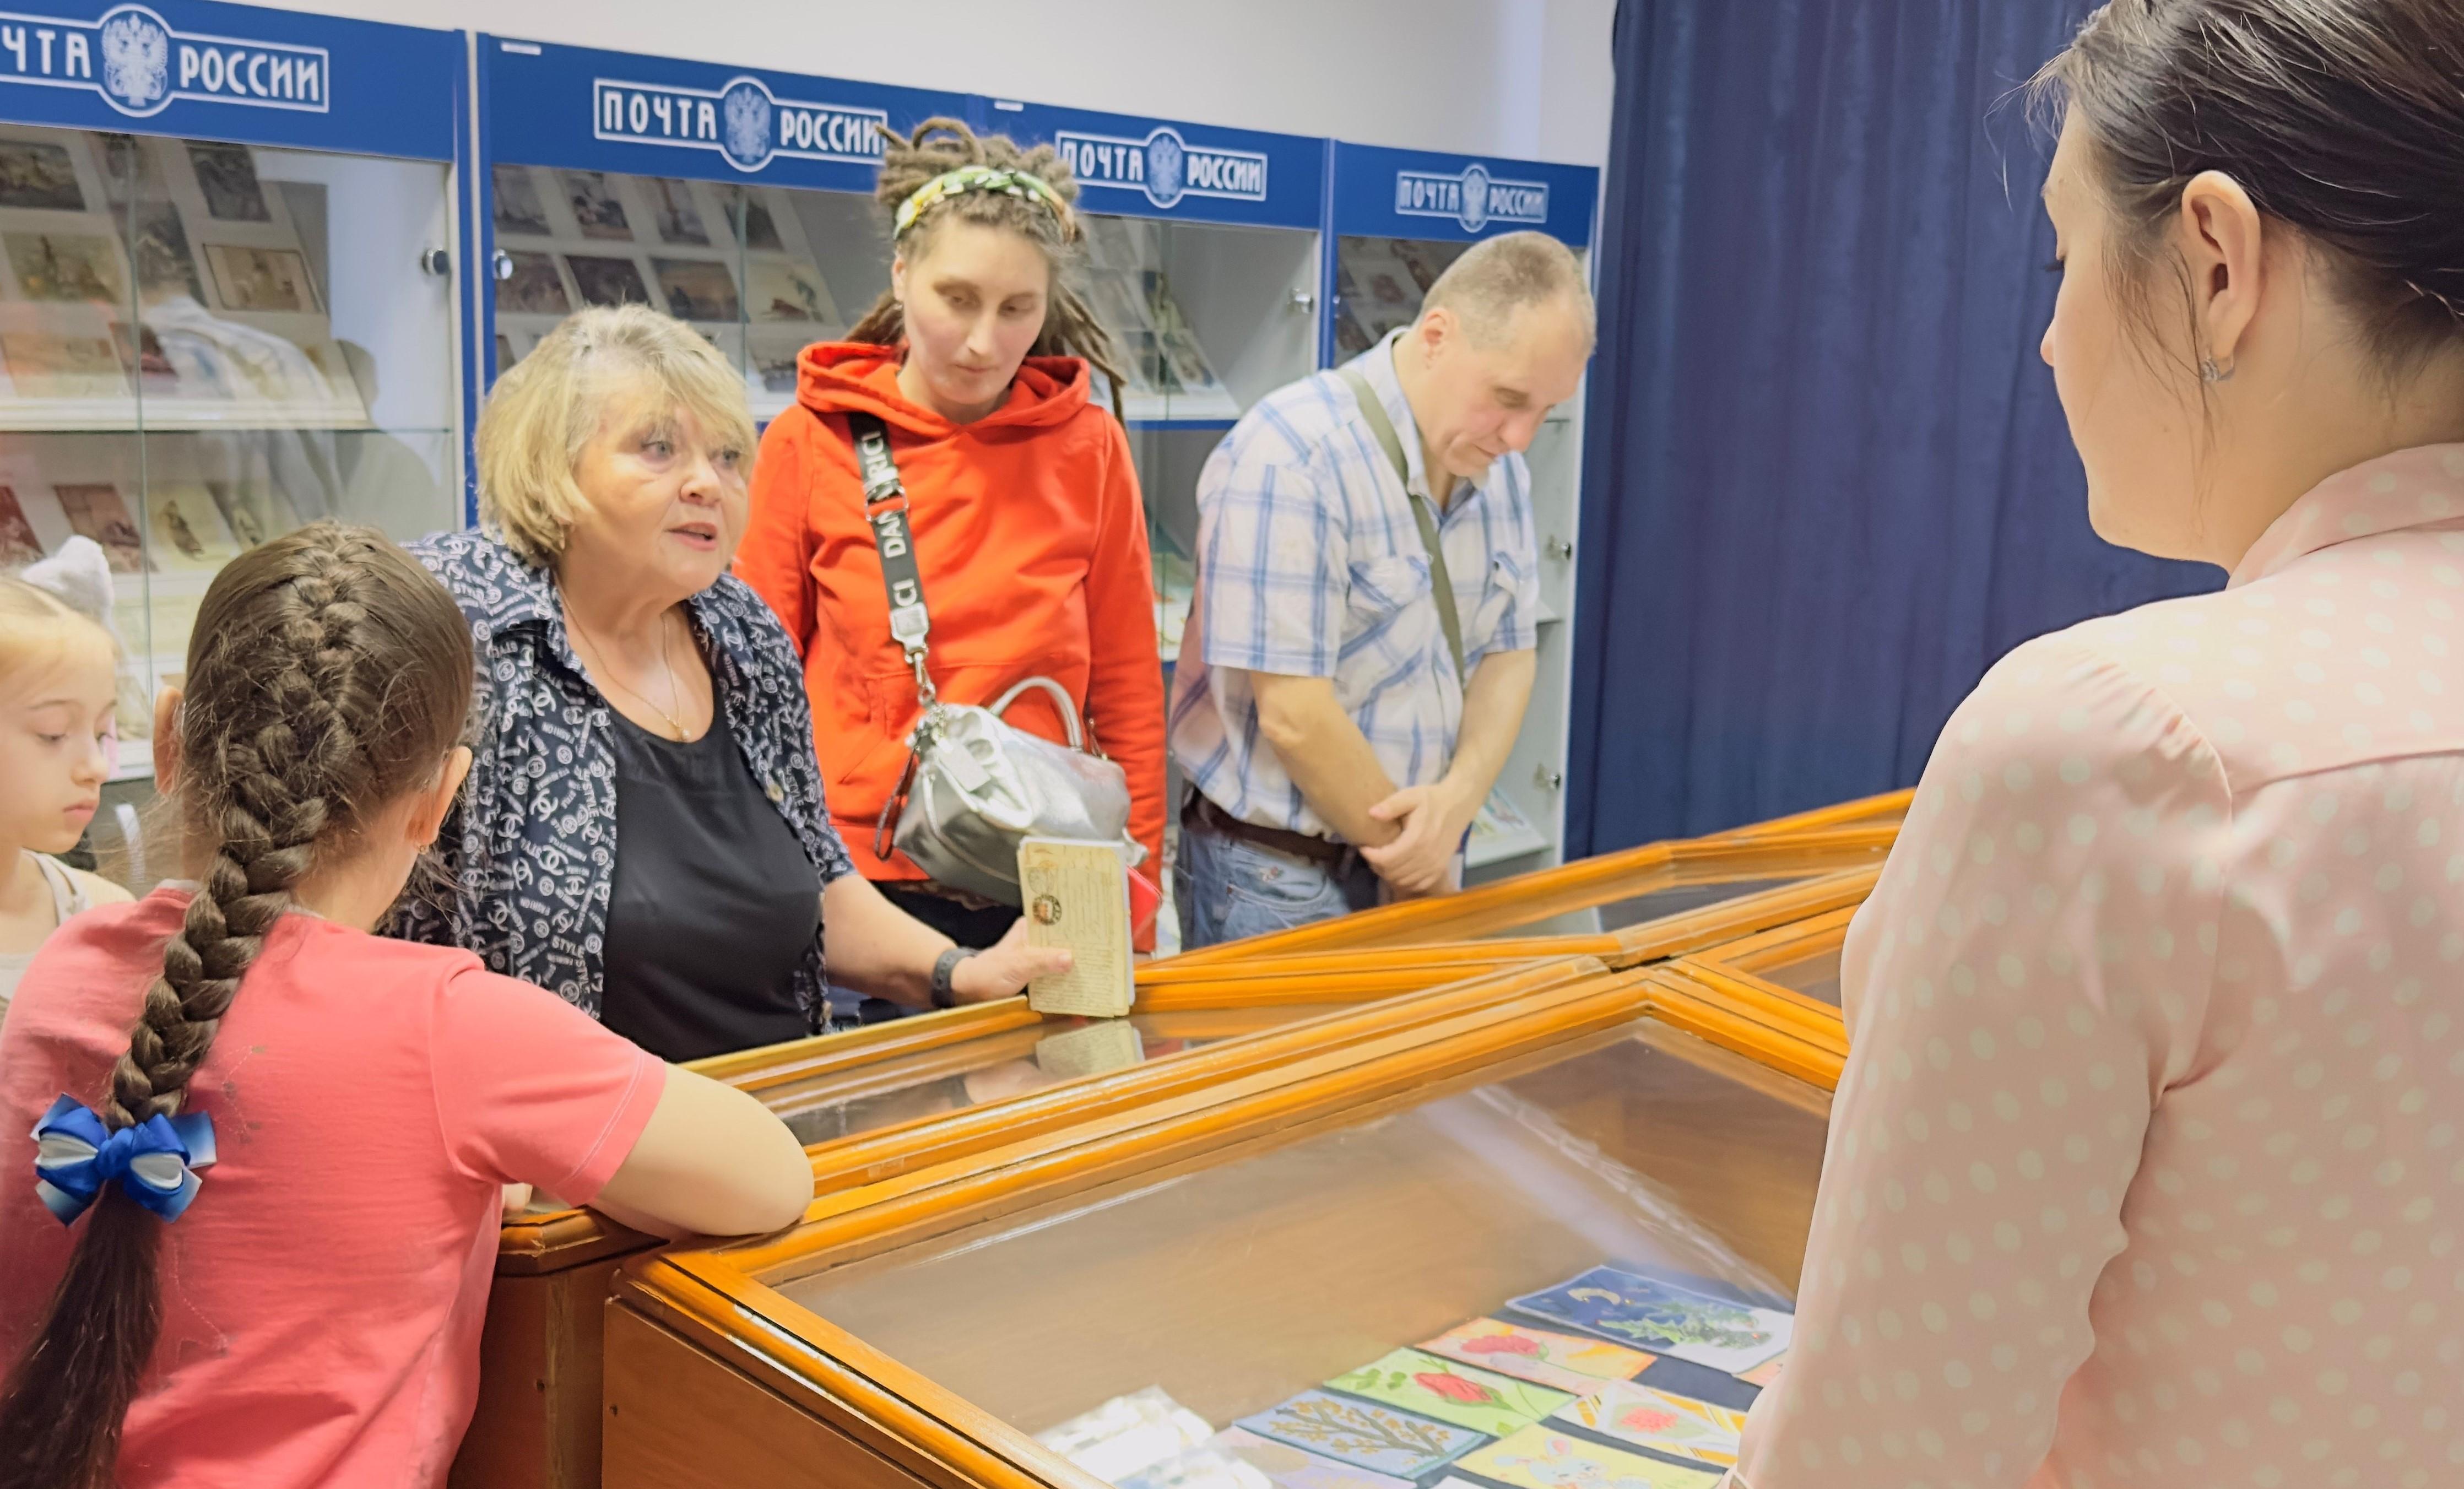 Десятки посетителей пришли в Великолукский почтовый музей ночью.